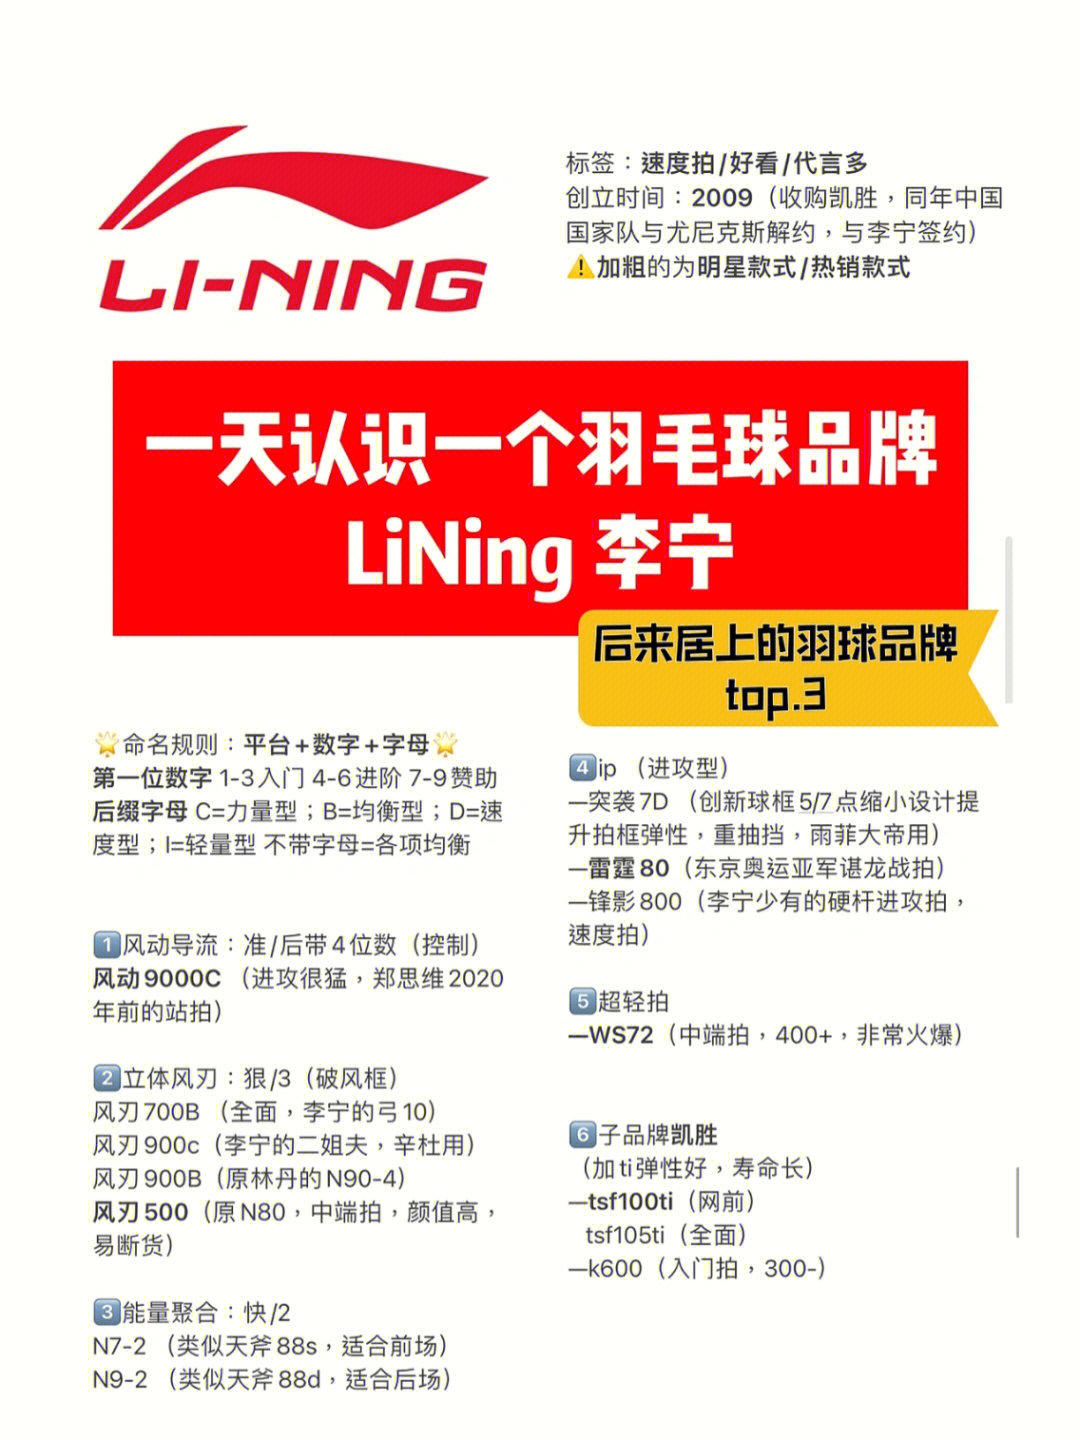 李宁羽毛球是李宁(中国)体育用品有限公司旗下品牌产品,赞助资